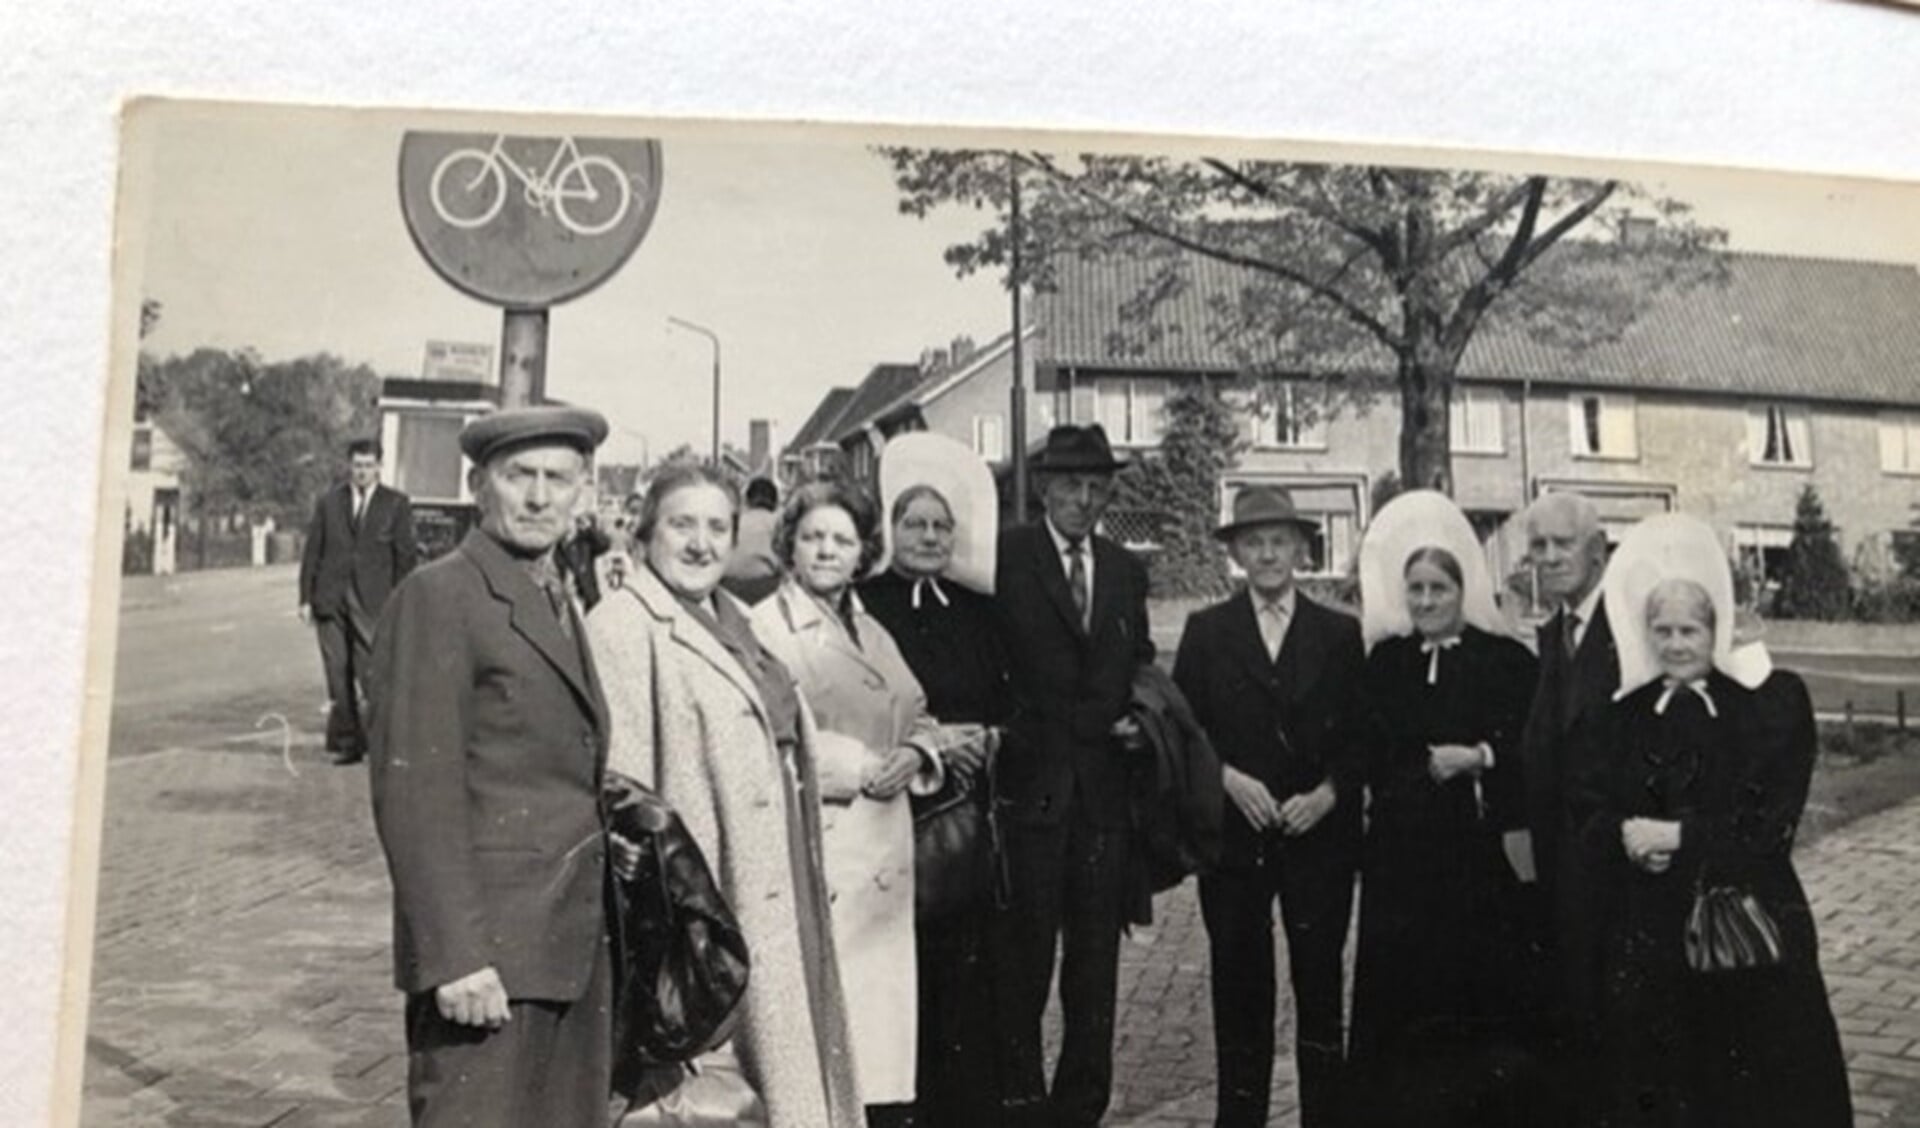 Links onder de paal staan opa en oma De Graaf tijdens een groepsuitje.